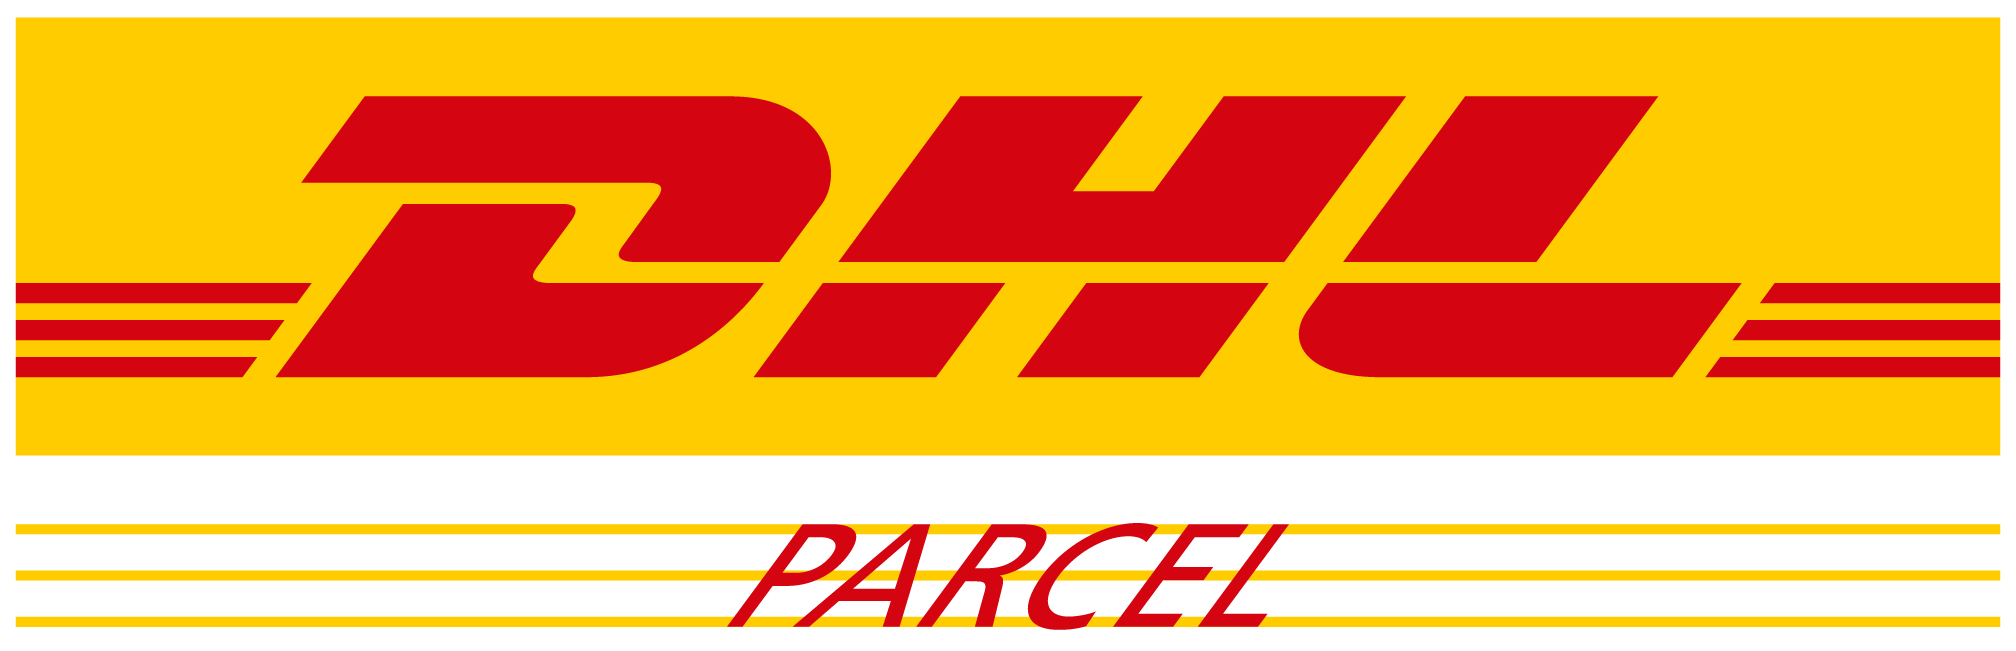 DHL Parcel logo - Greenway Logistics